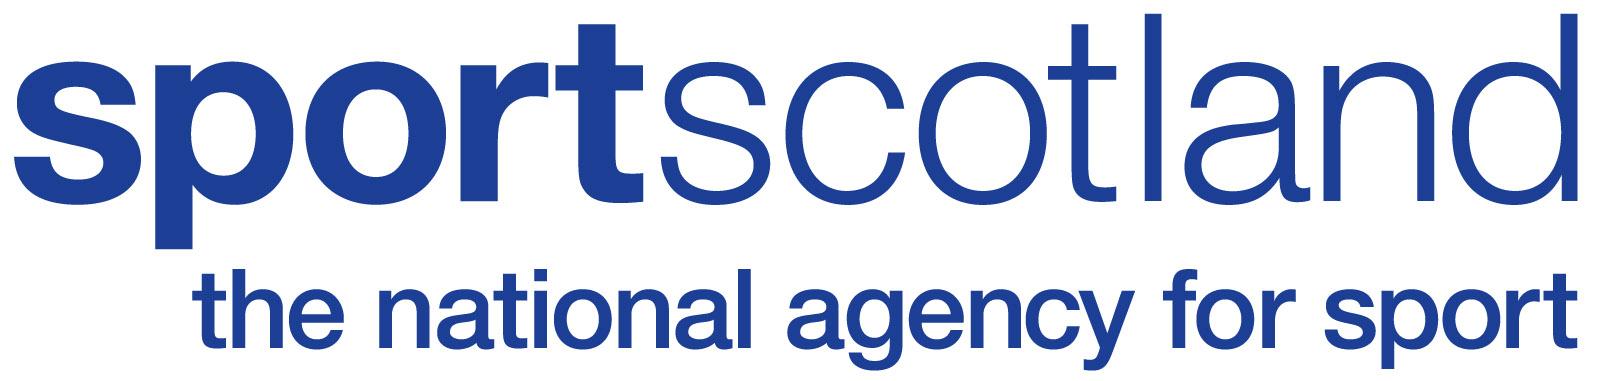 SportScotland logo